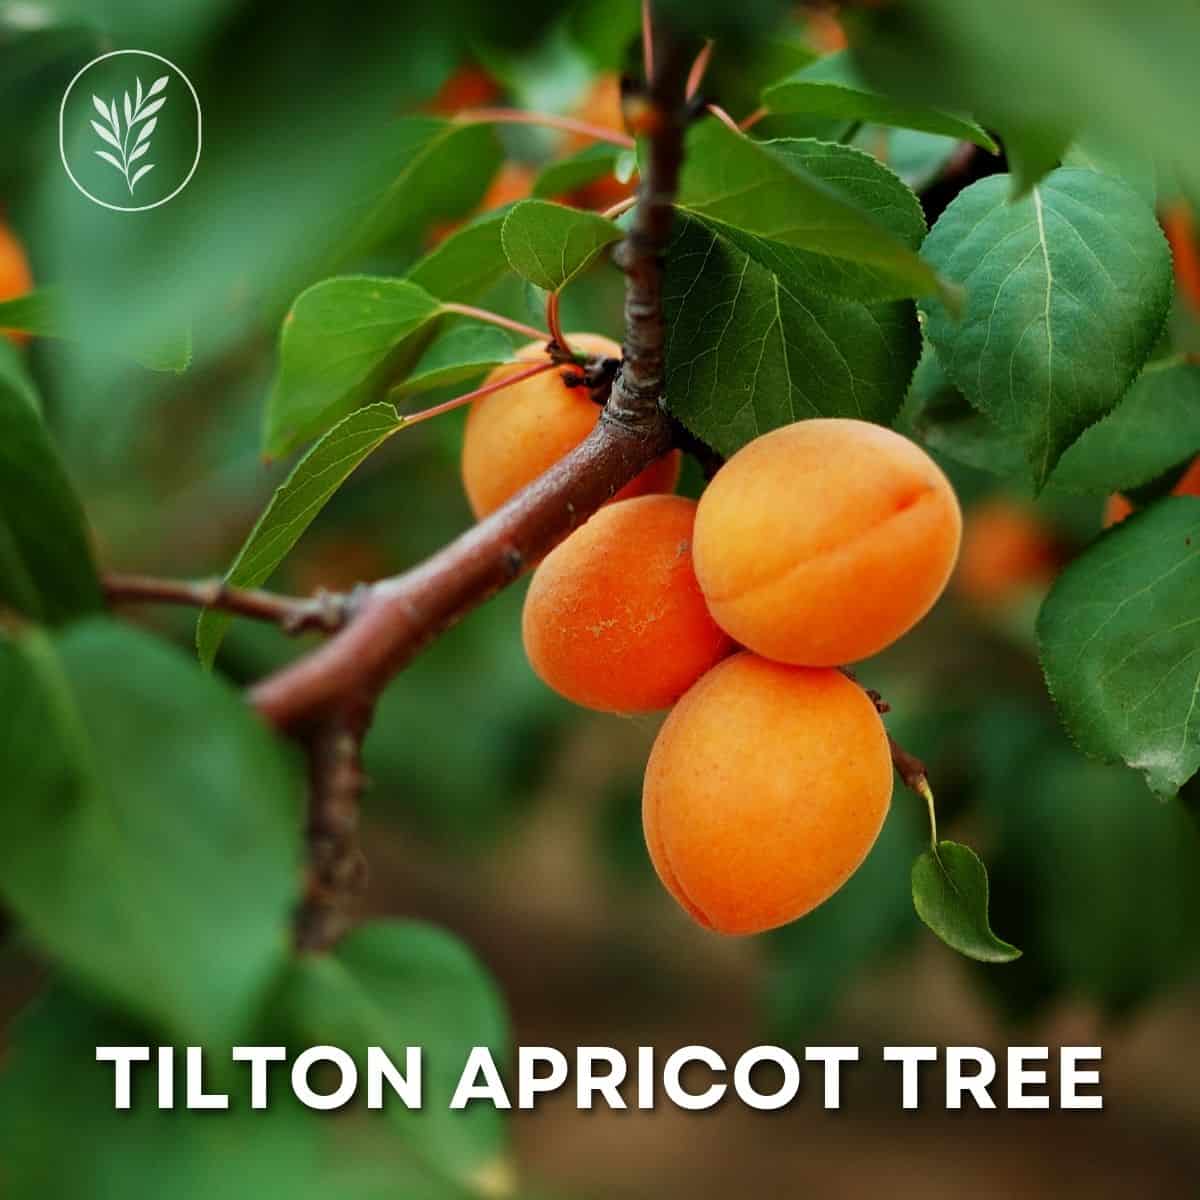 Tilton apricot tree via @home4theharvest